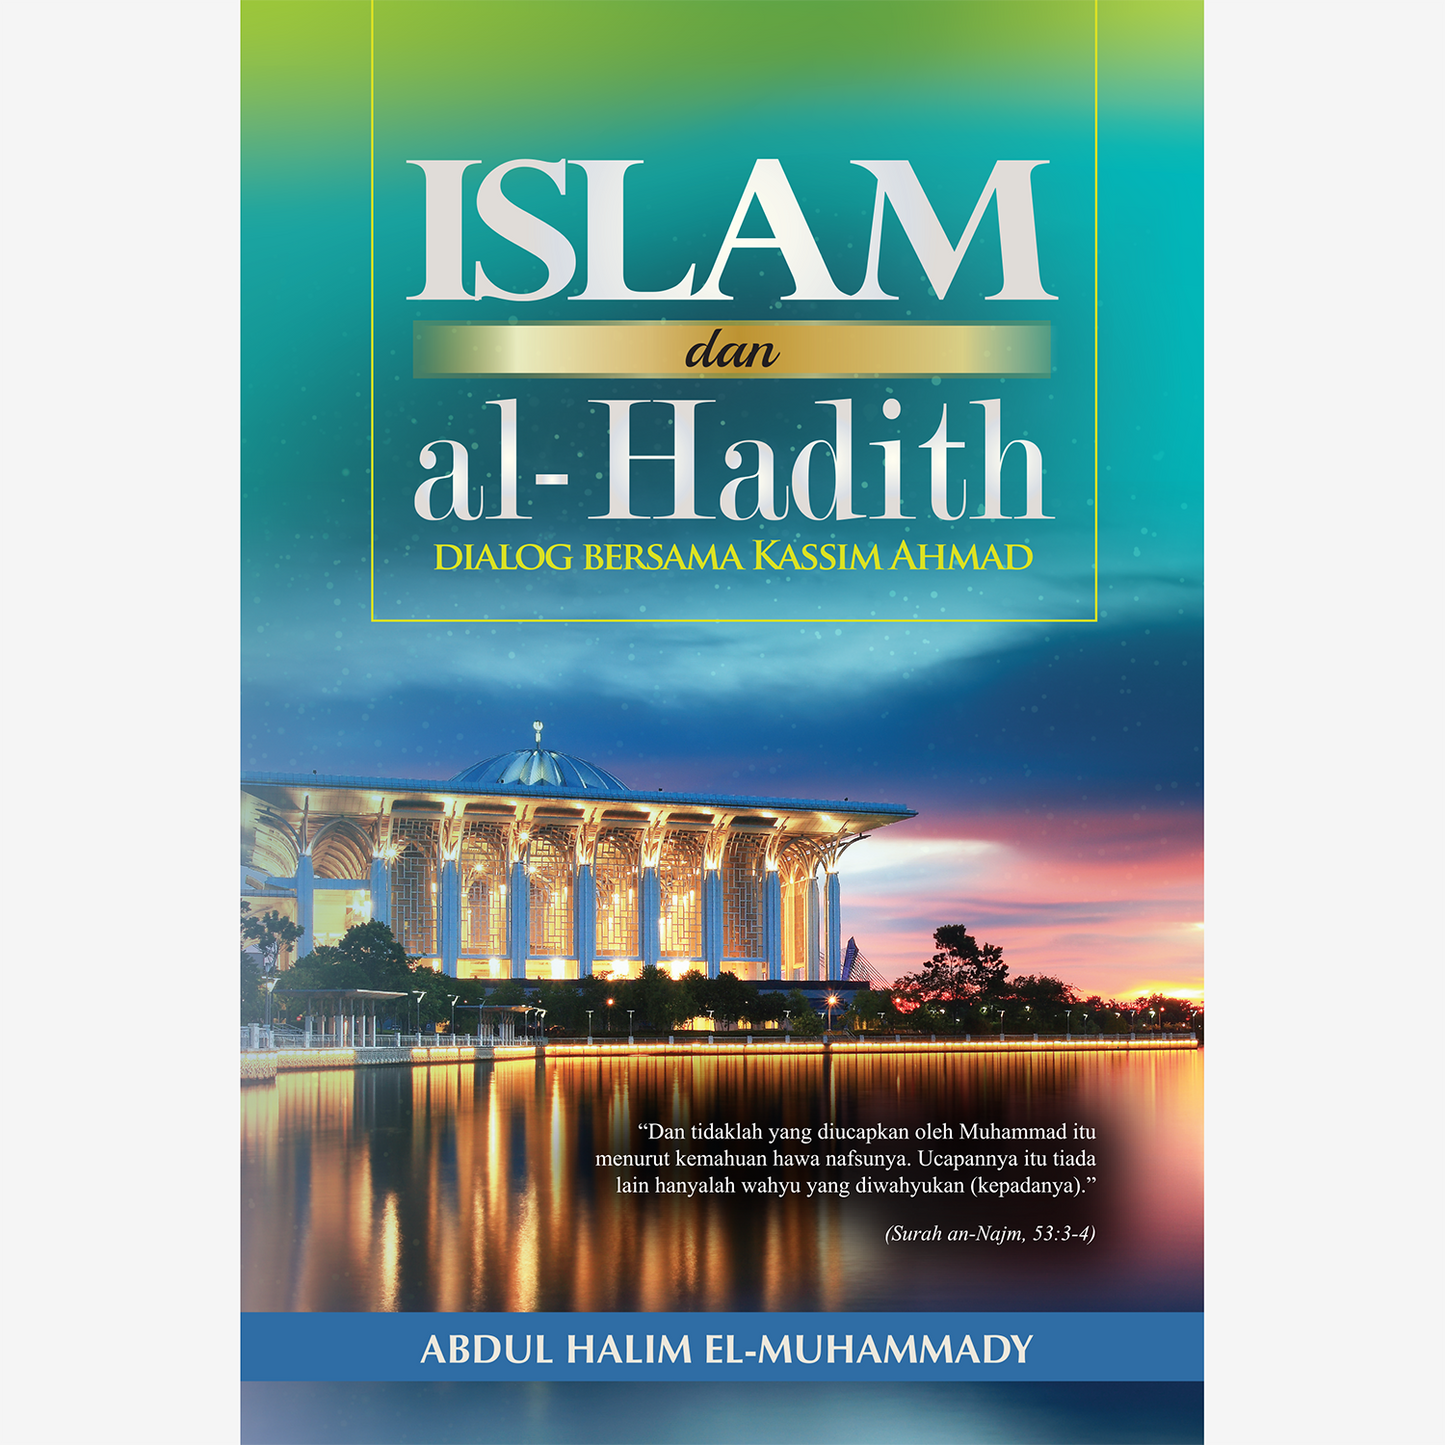 Islam dan al-Hadith: Dialog bersama Kassim Ahmad